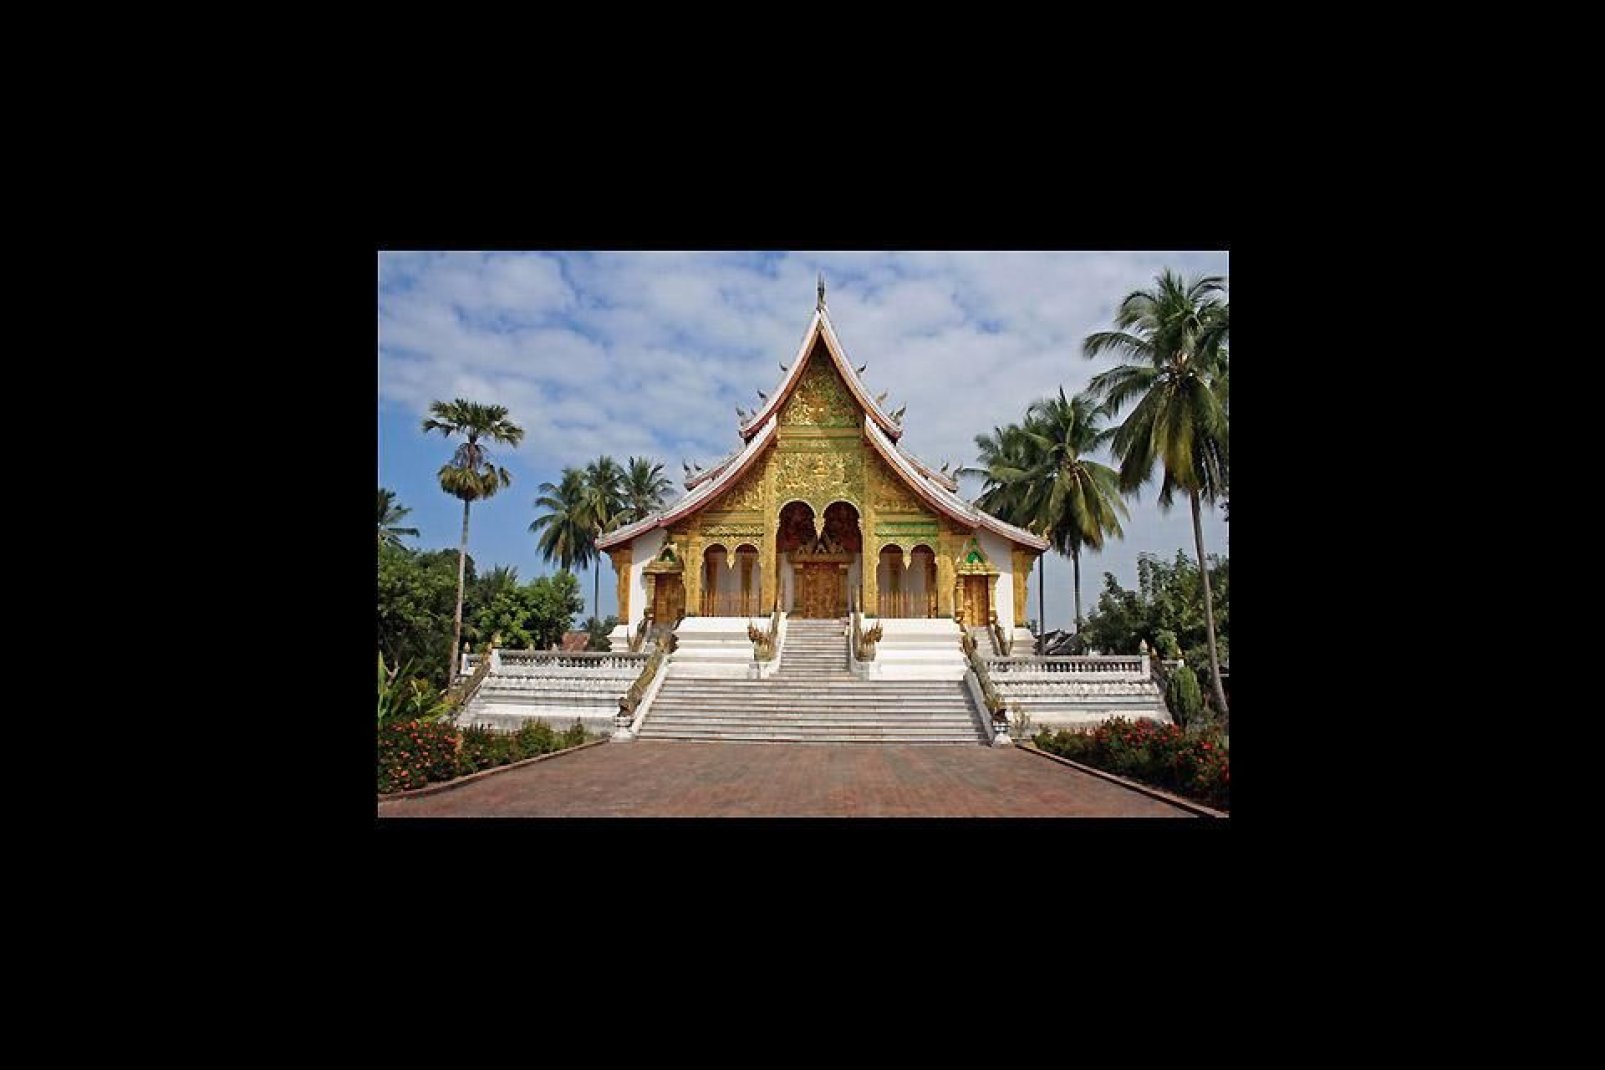 El templo budista de Wat Xieng Thong es probablemente uno de los monumentos más bonitos de Luang Prabang. Además la ciudad está declarada patrimonio mundial de la UNESCO.